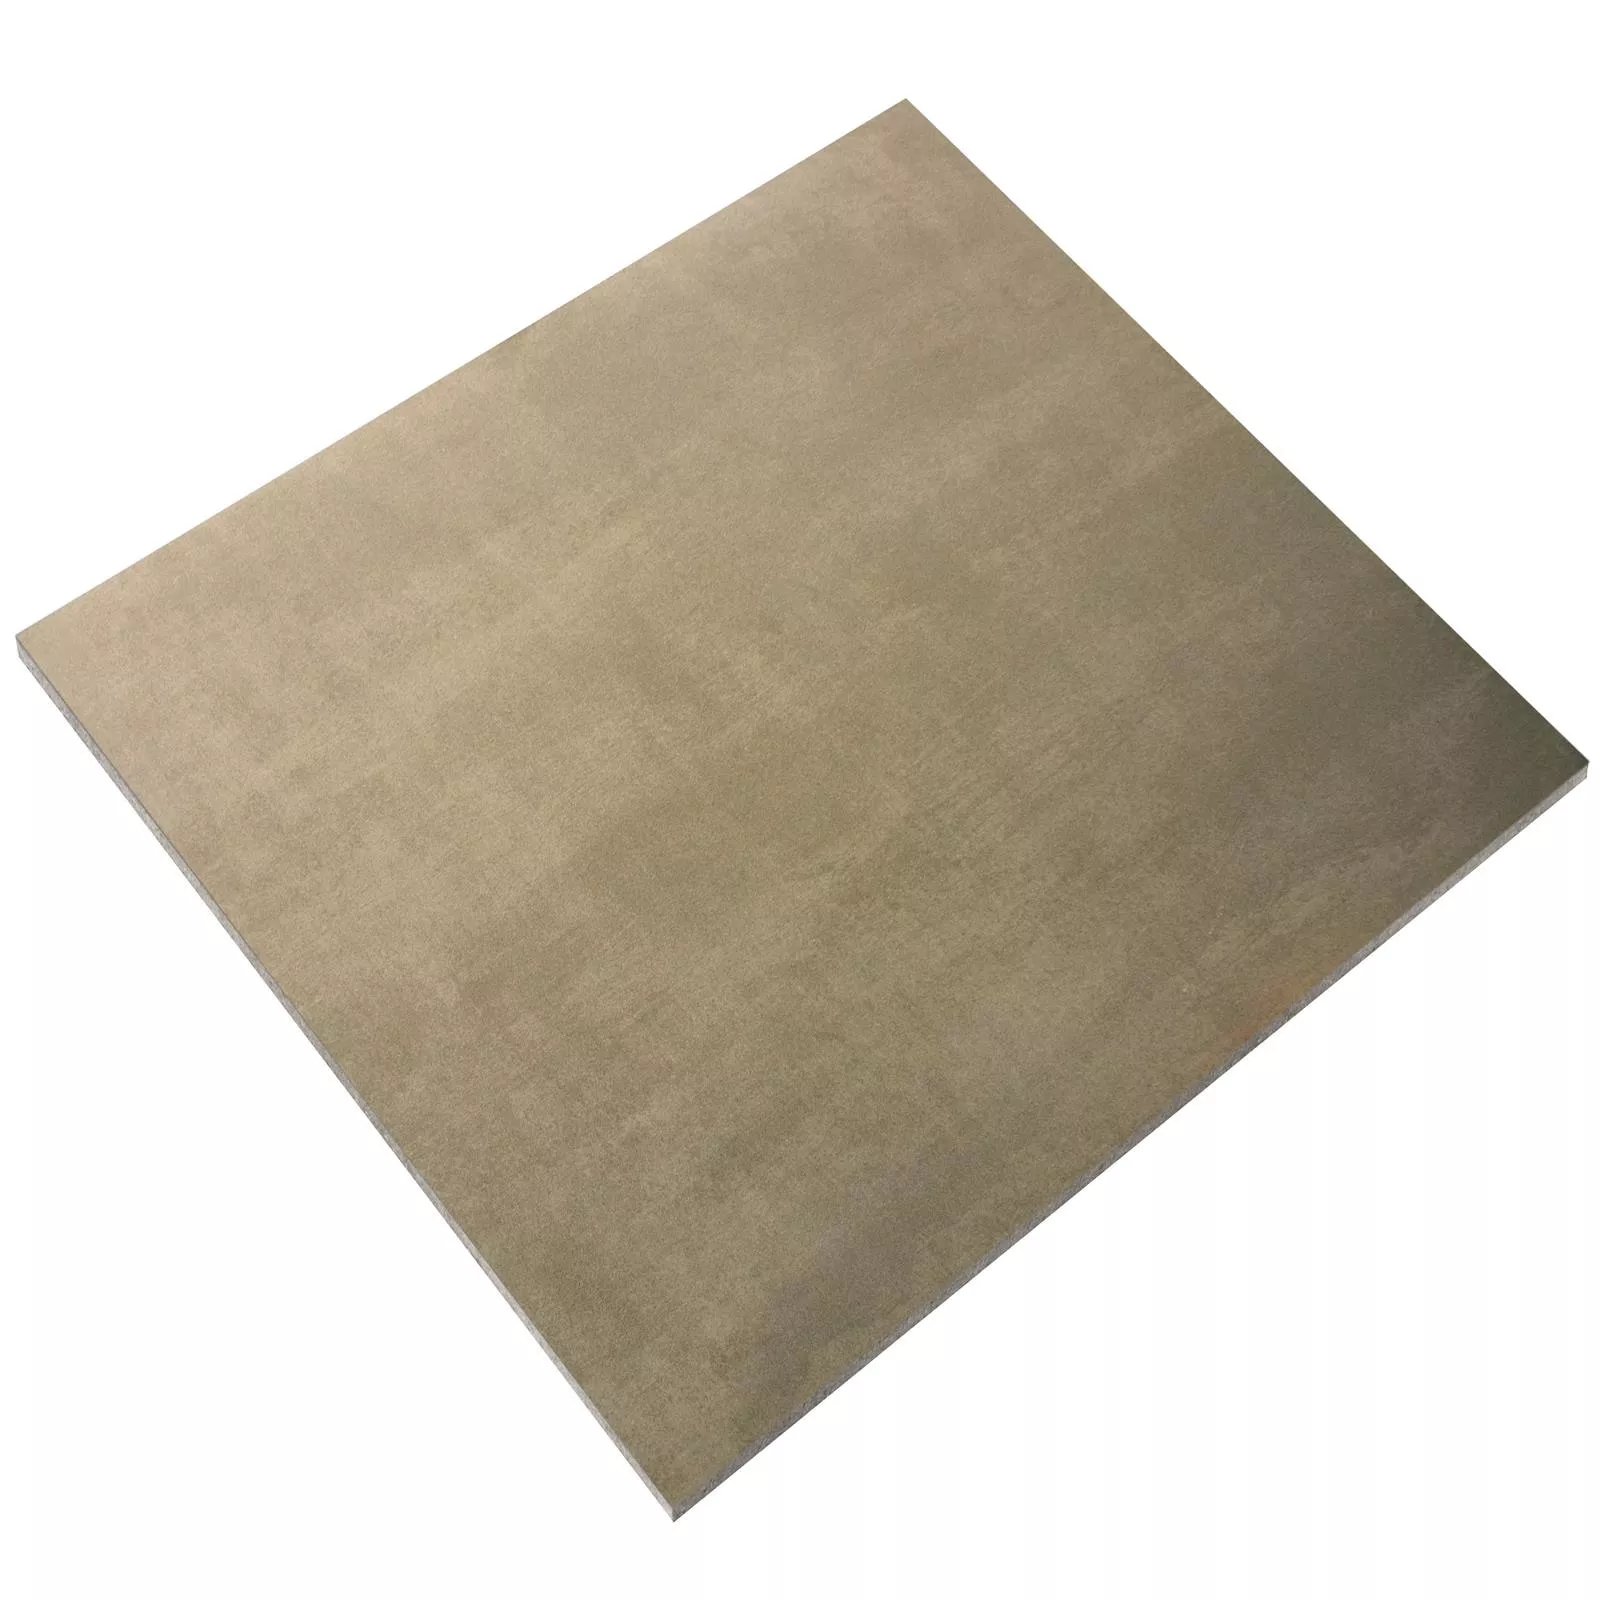 Sample Floor Tiles Beton Optic Noorvik Brown 60x60cm